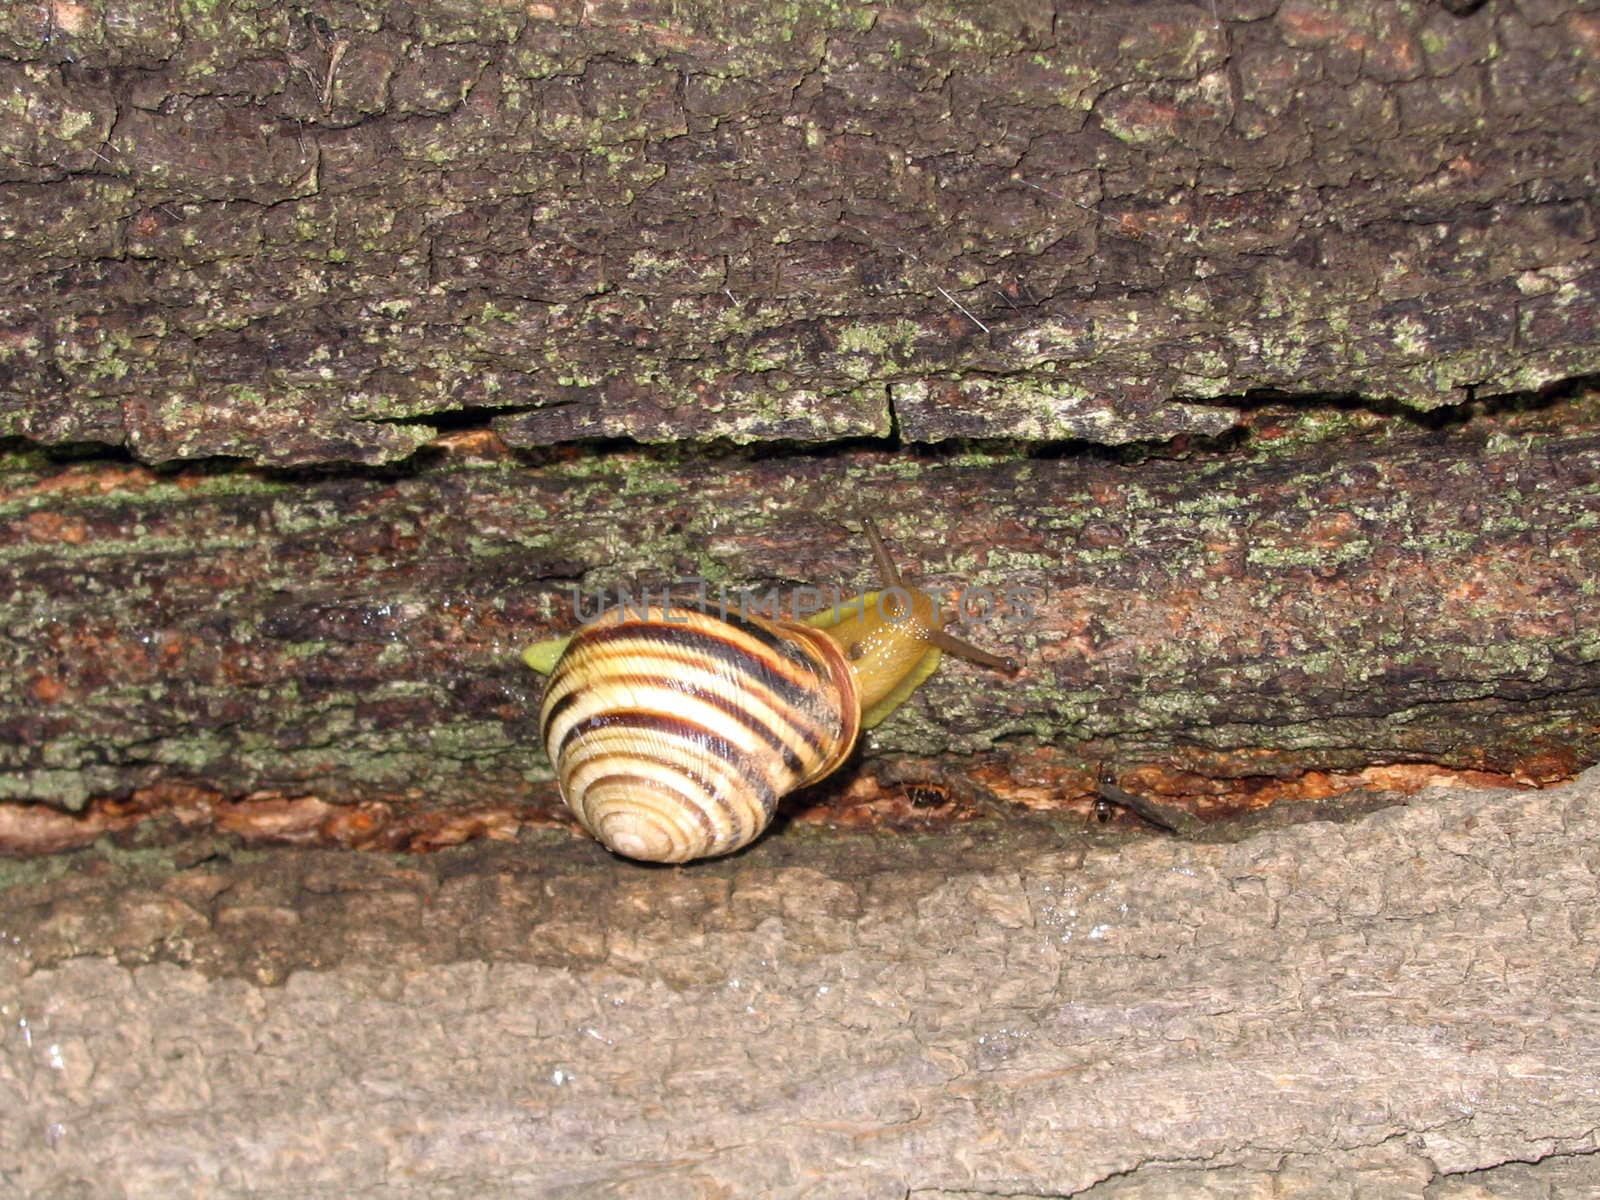 Snail creeps on tree